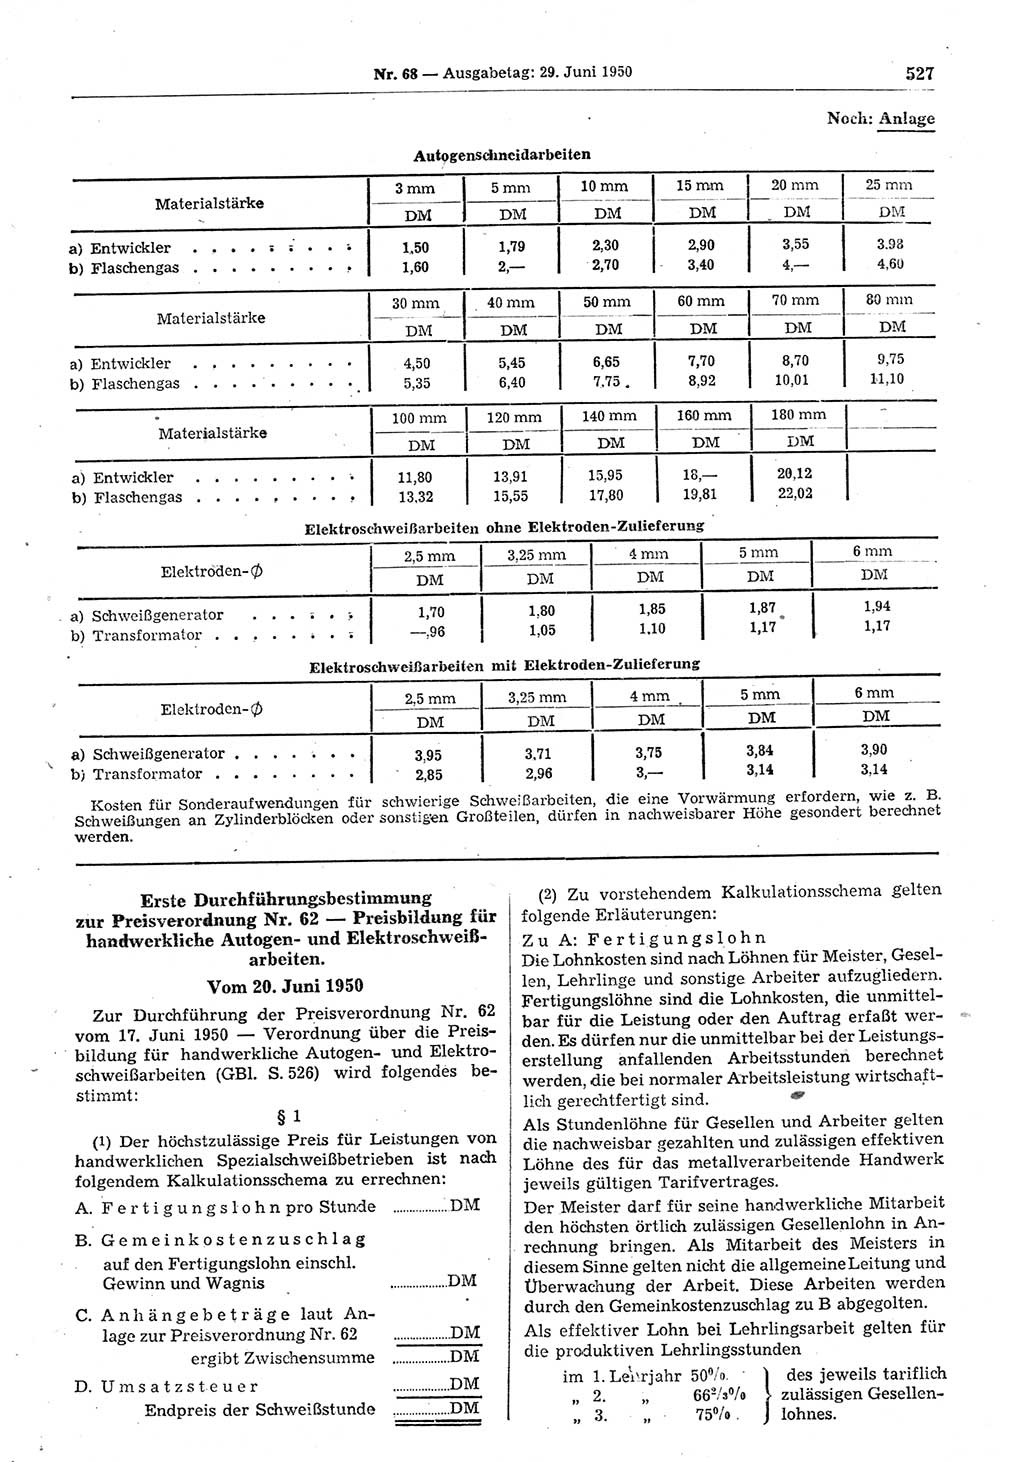 Gesetzblatt (GBl.) der Deutschen Demokratischen Republik (DDR) 1950, Seite 527 (GBl. DDR 1950, S. 527)